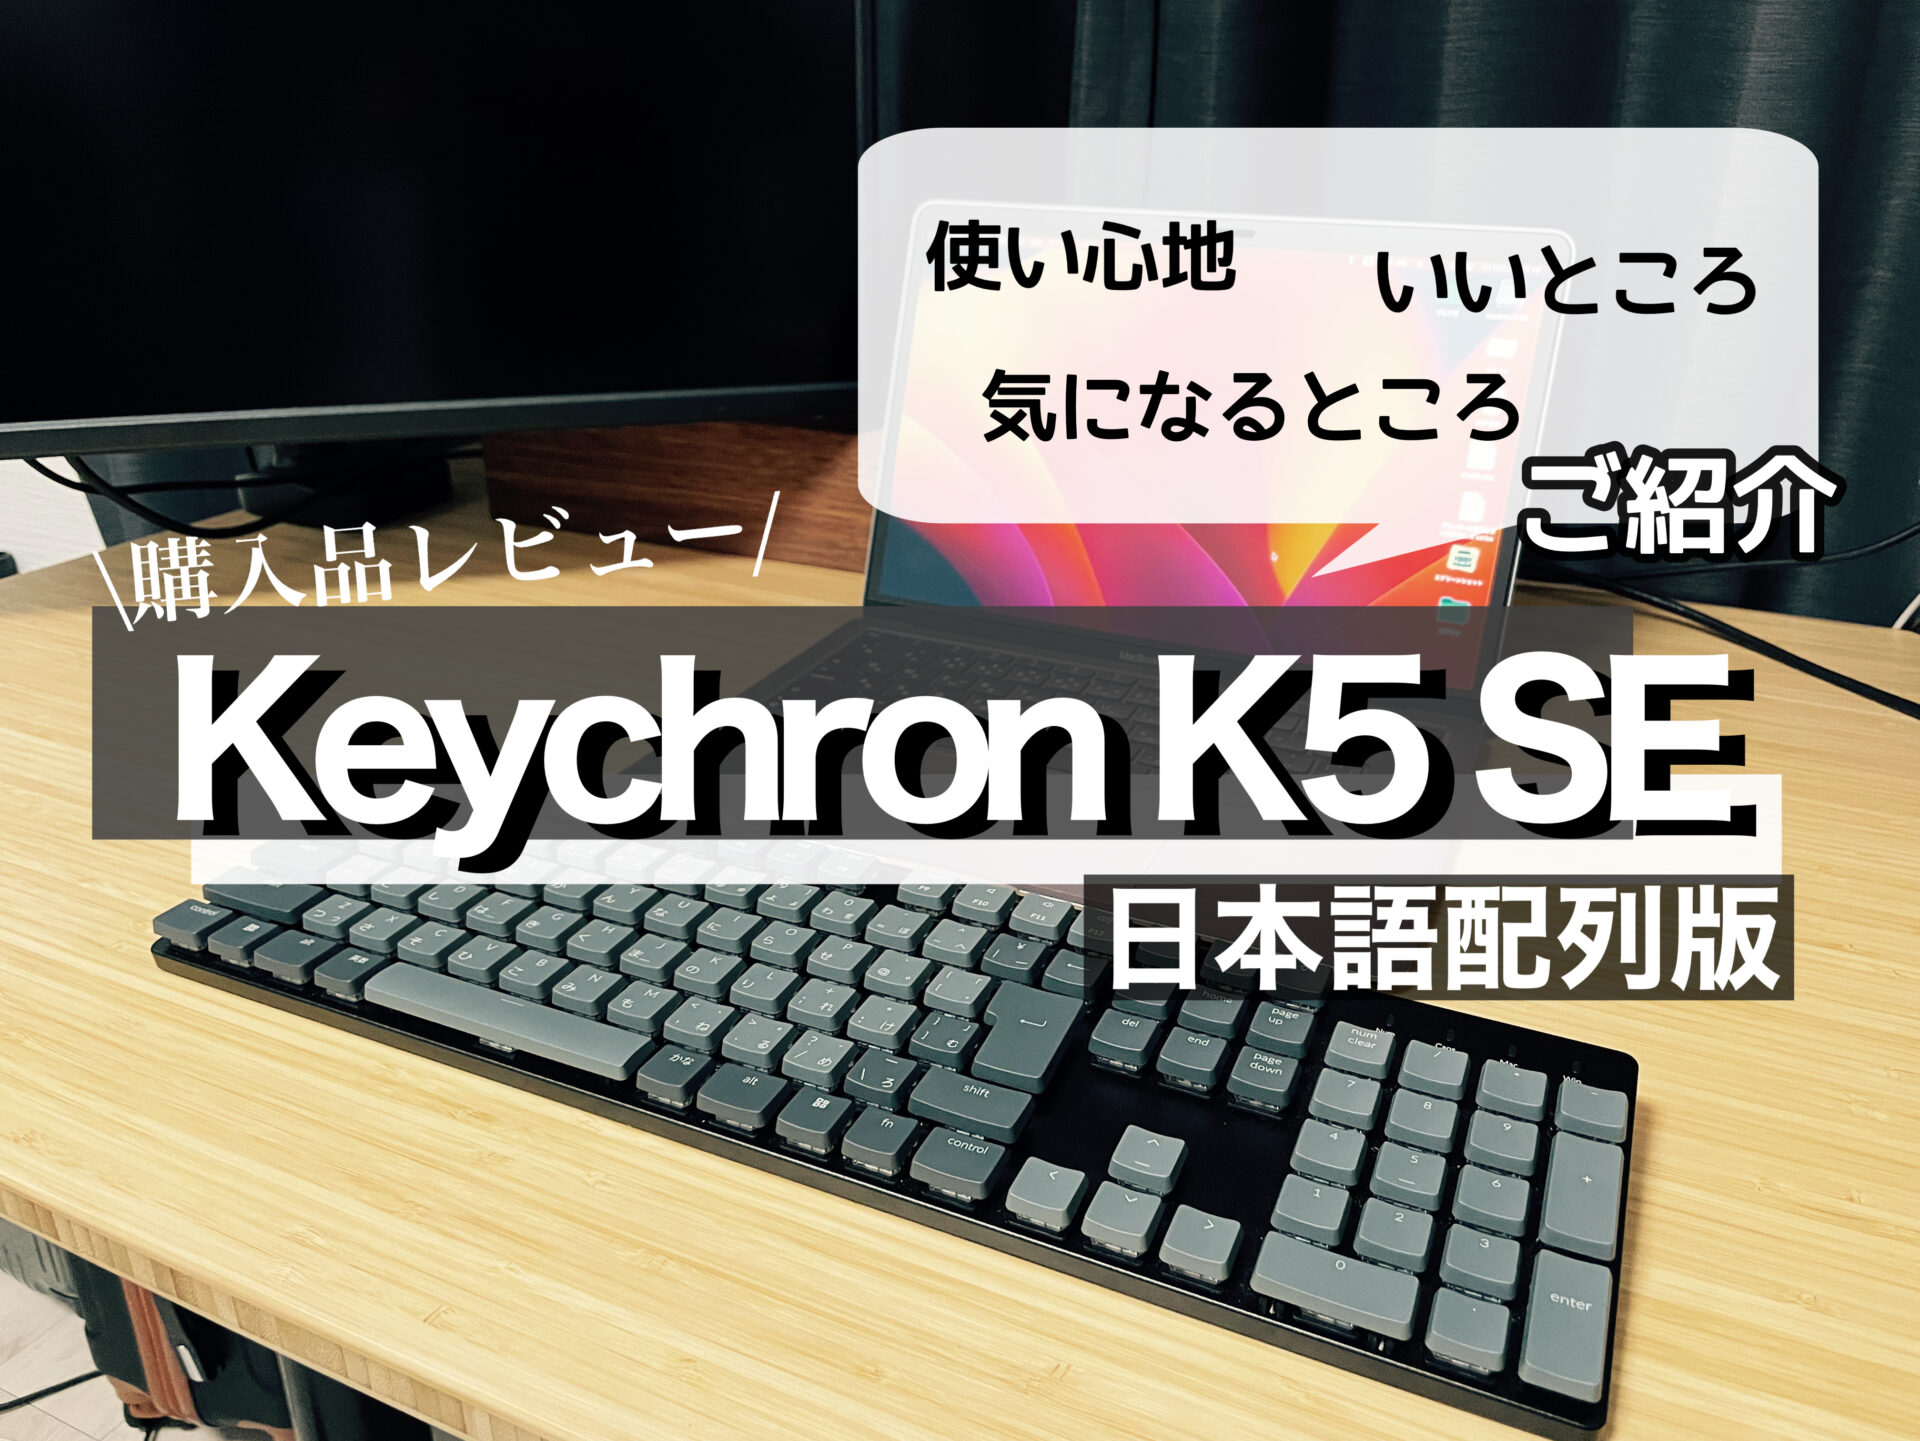 Keychron K5 SE ワイヤレスメカニカルキーボード(日本JIS配列